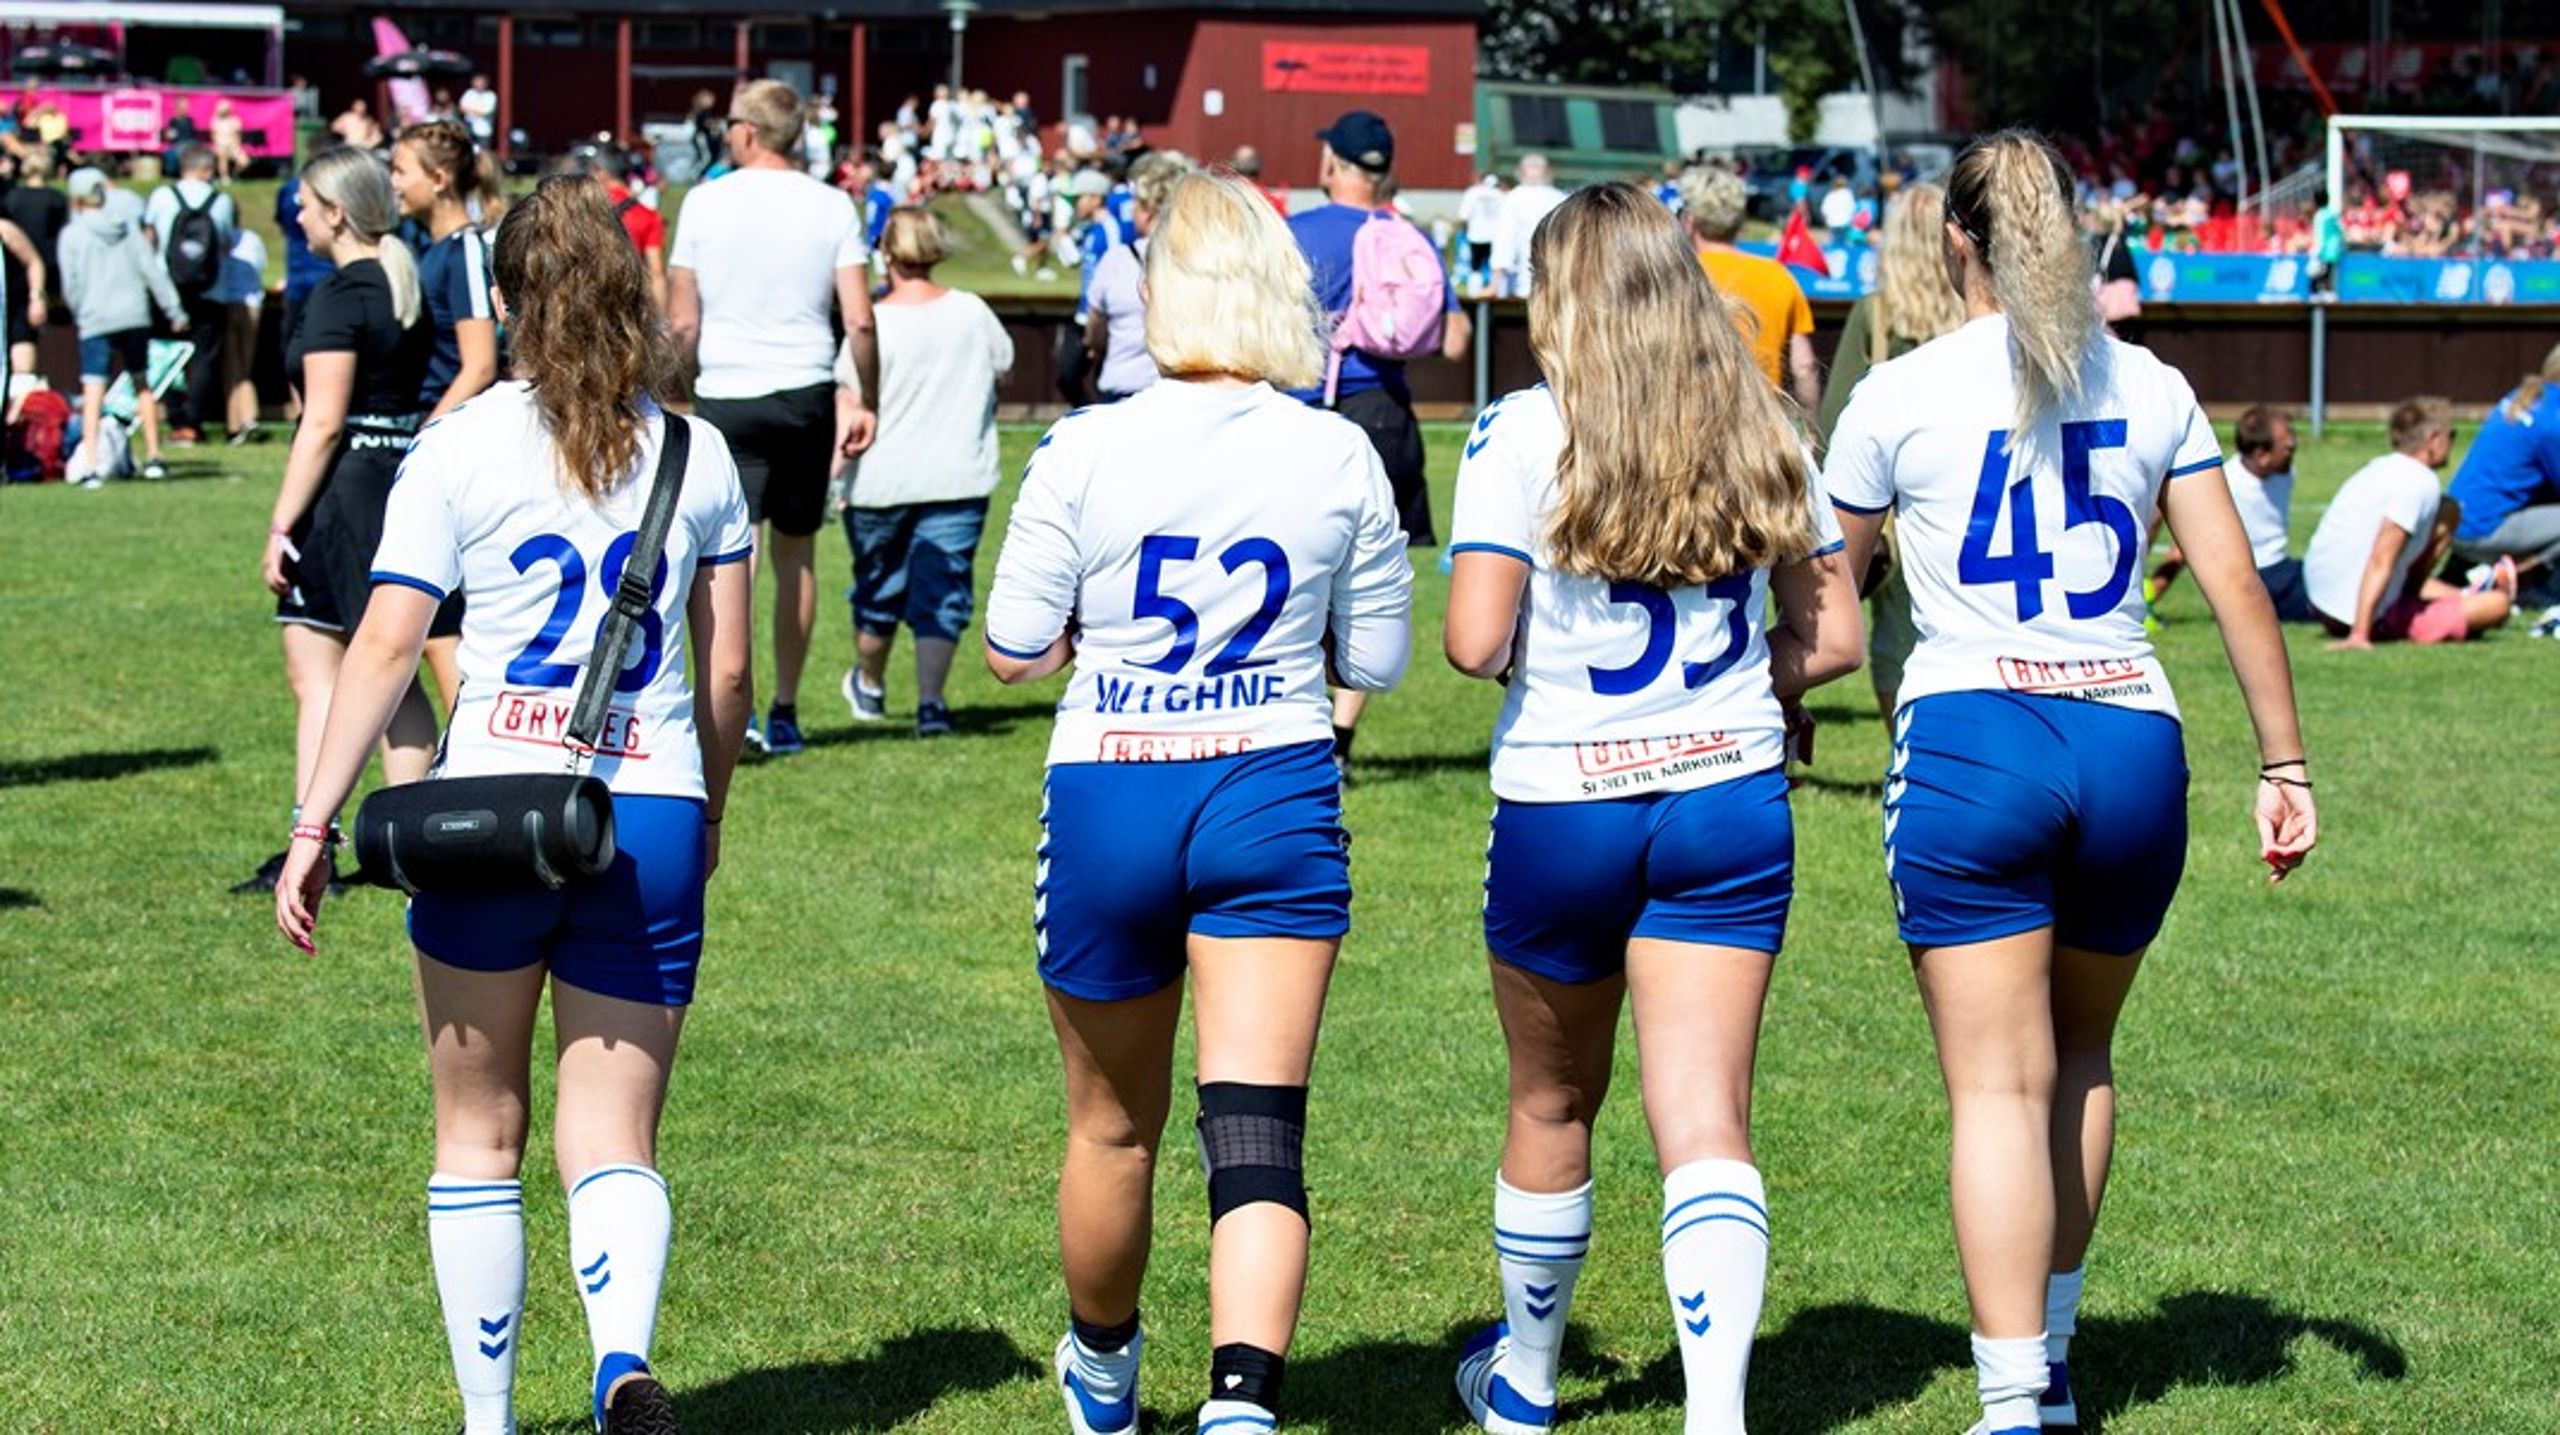 Det er ofte i fritiden, at de unge former sig eksistentielt. De møder eksempelvis en fodboldtræner, der viser dem vigtigheden af disciplin, skriver Lars Buchholt Kristensen.